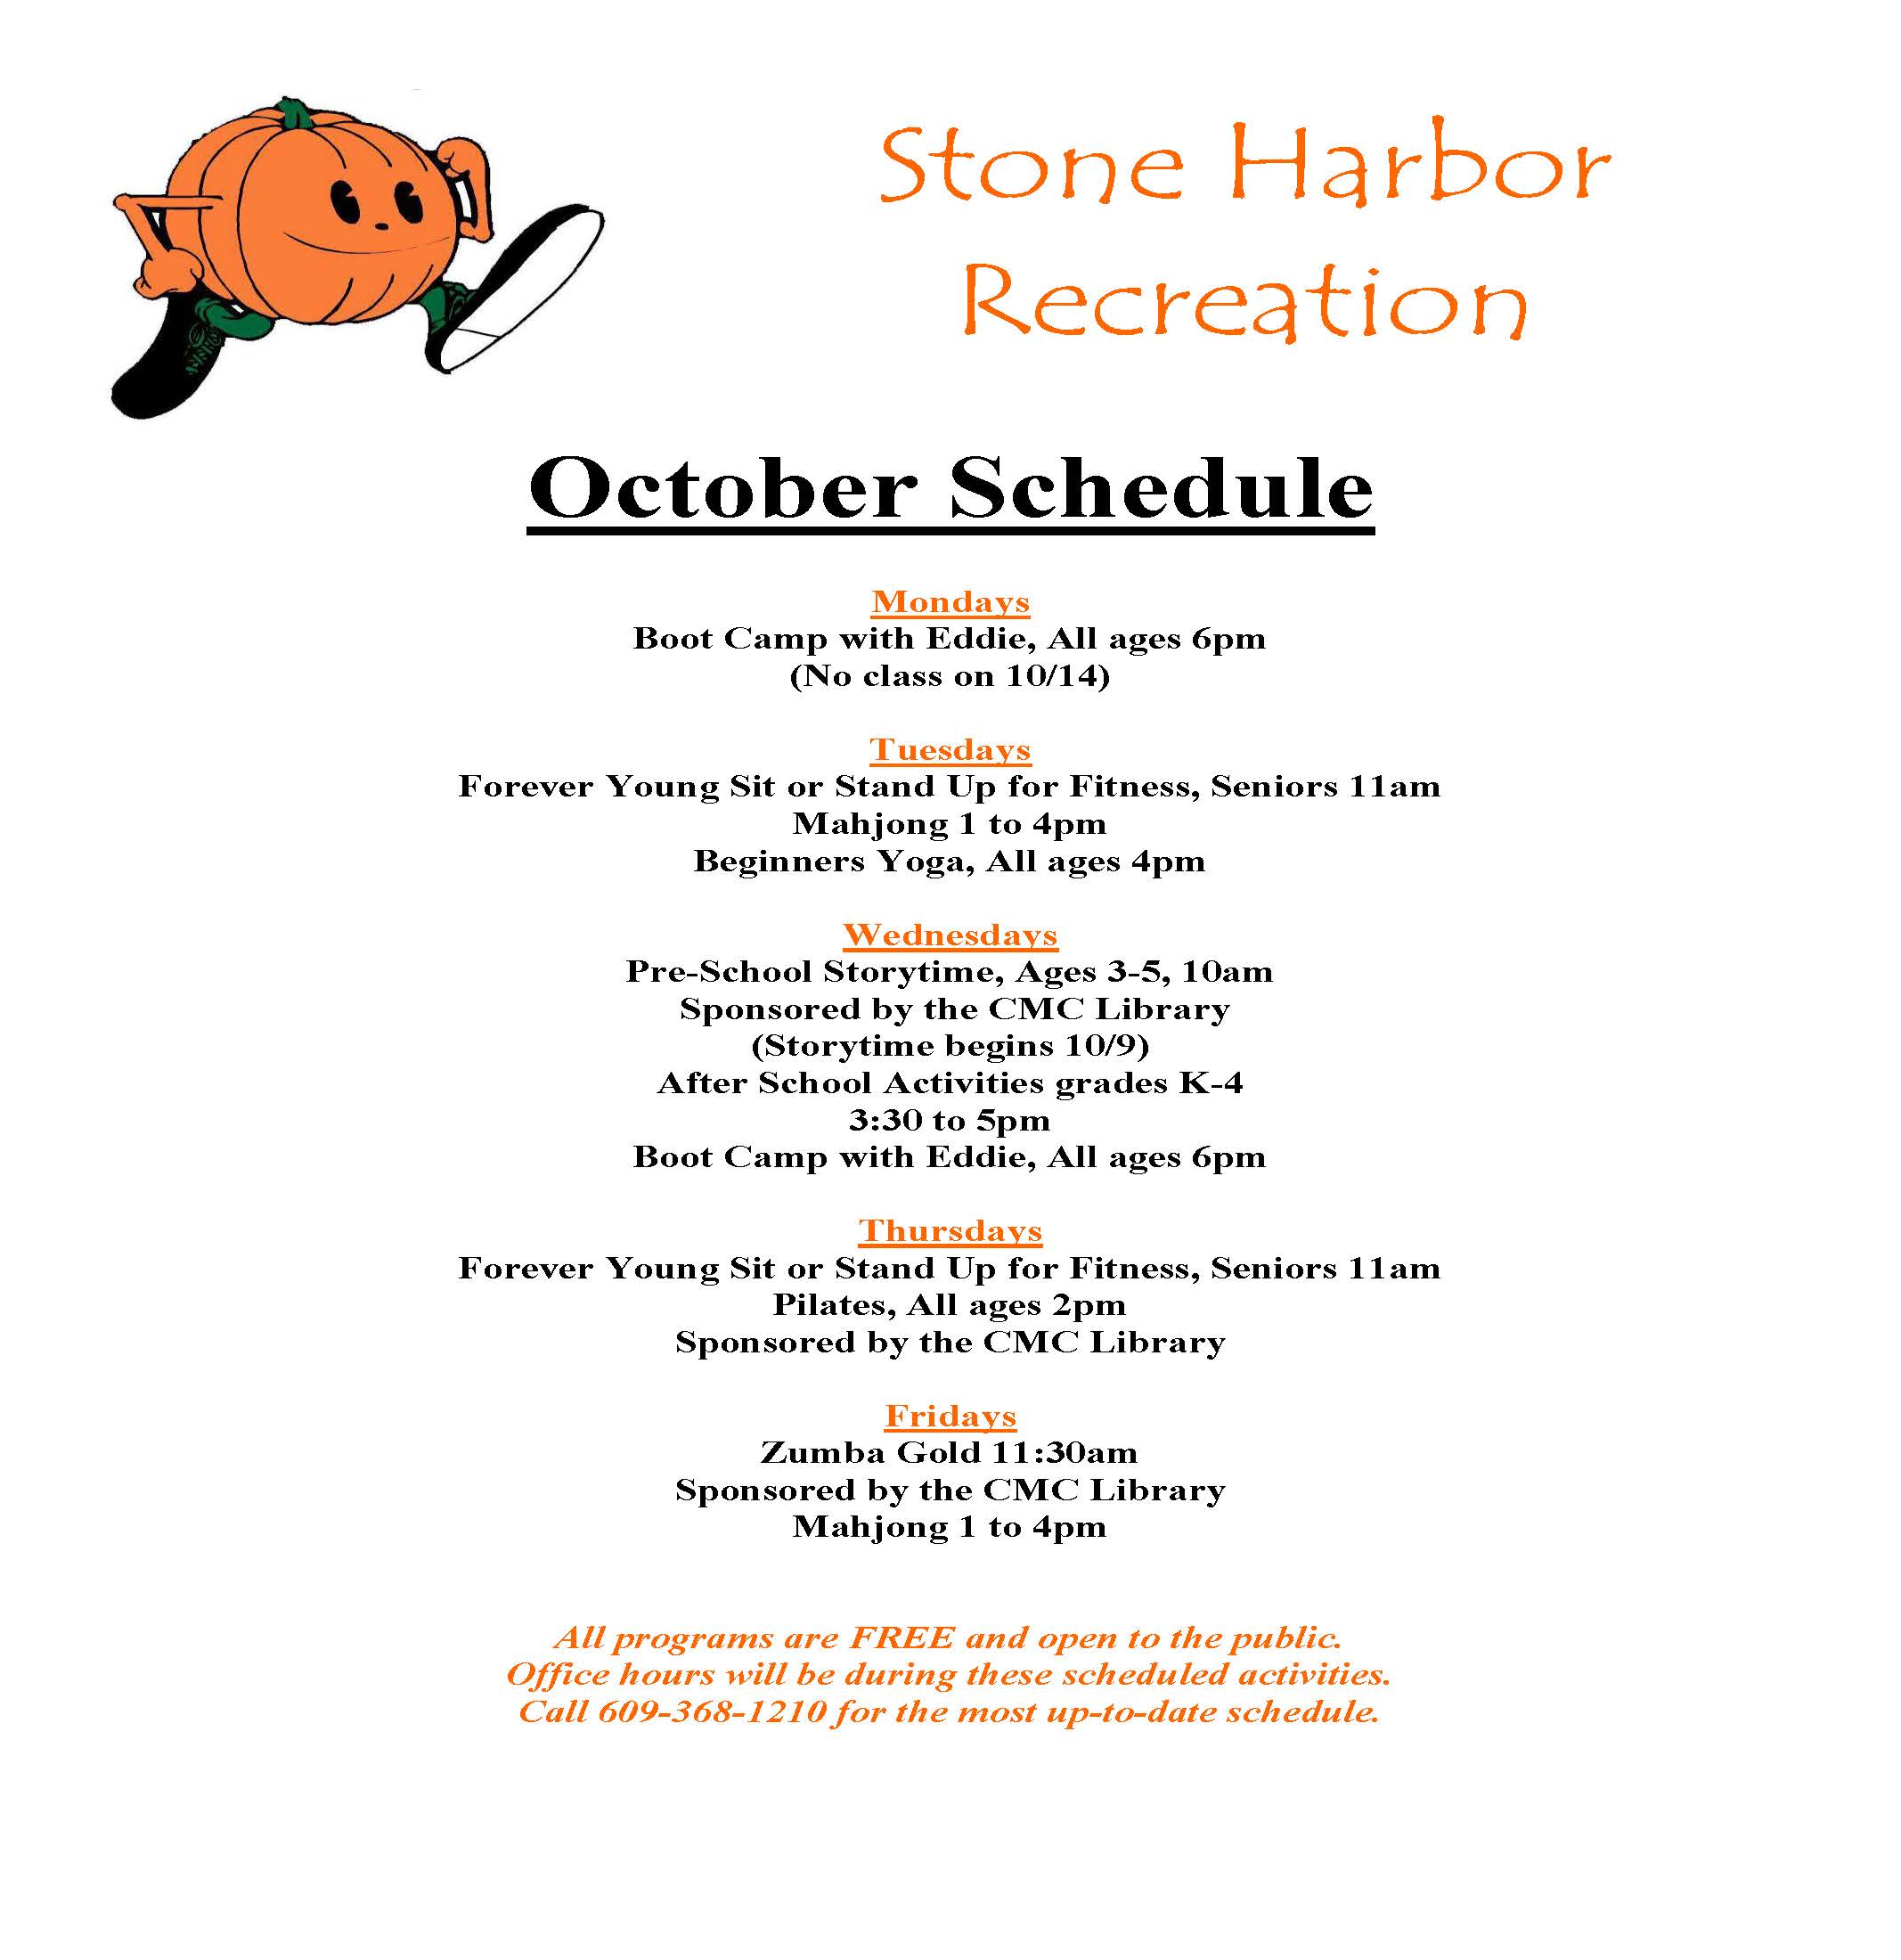 October, 2013 Stone Harbor Recreation Schedule Borough of Stone Harbor